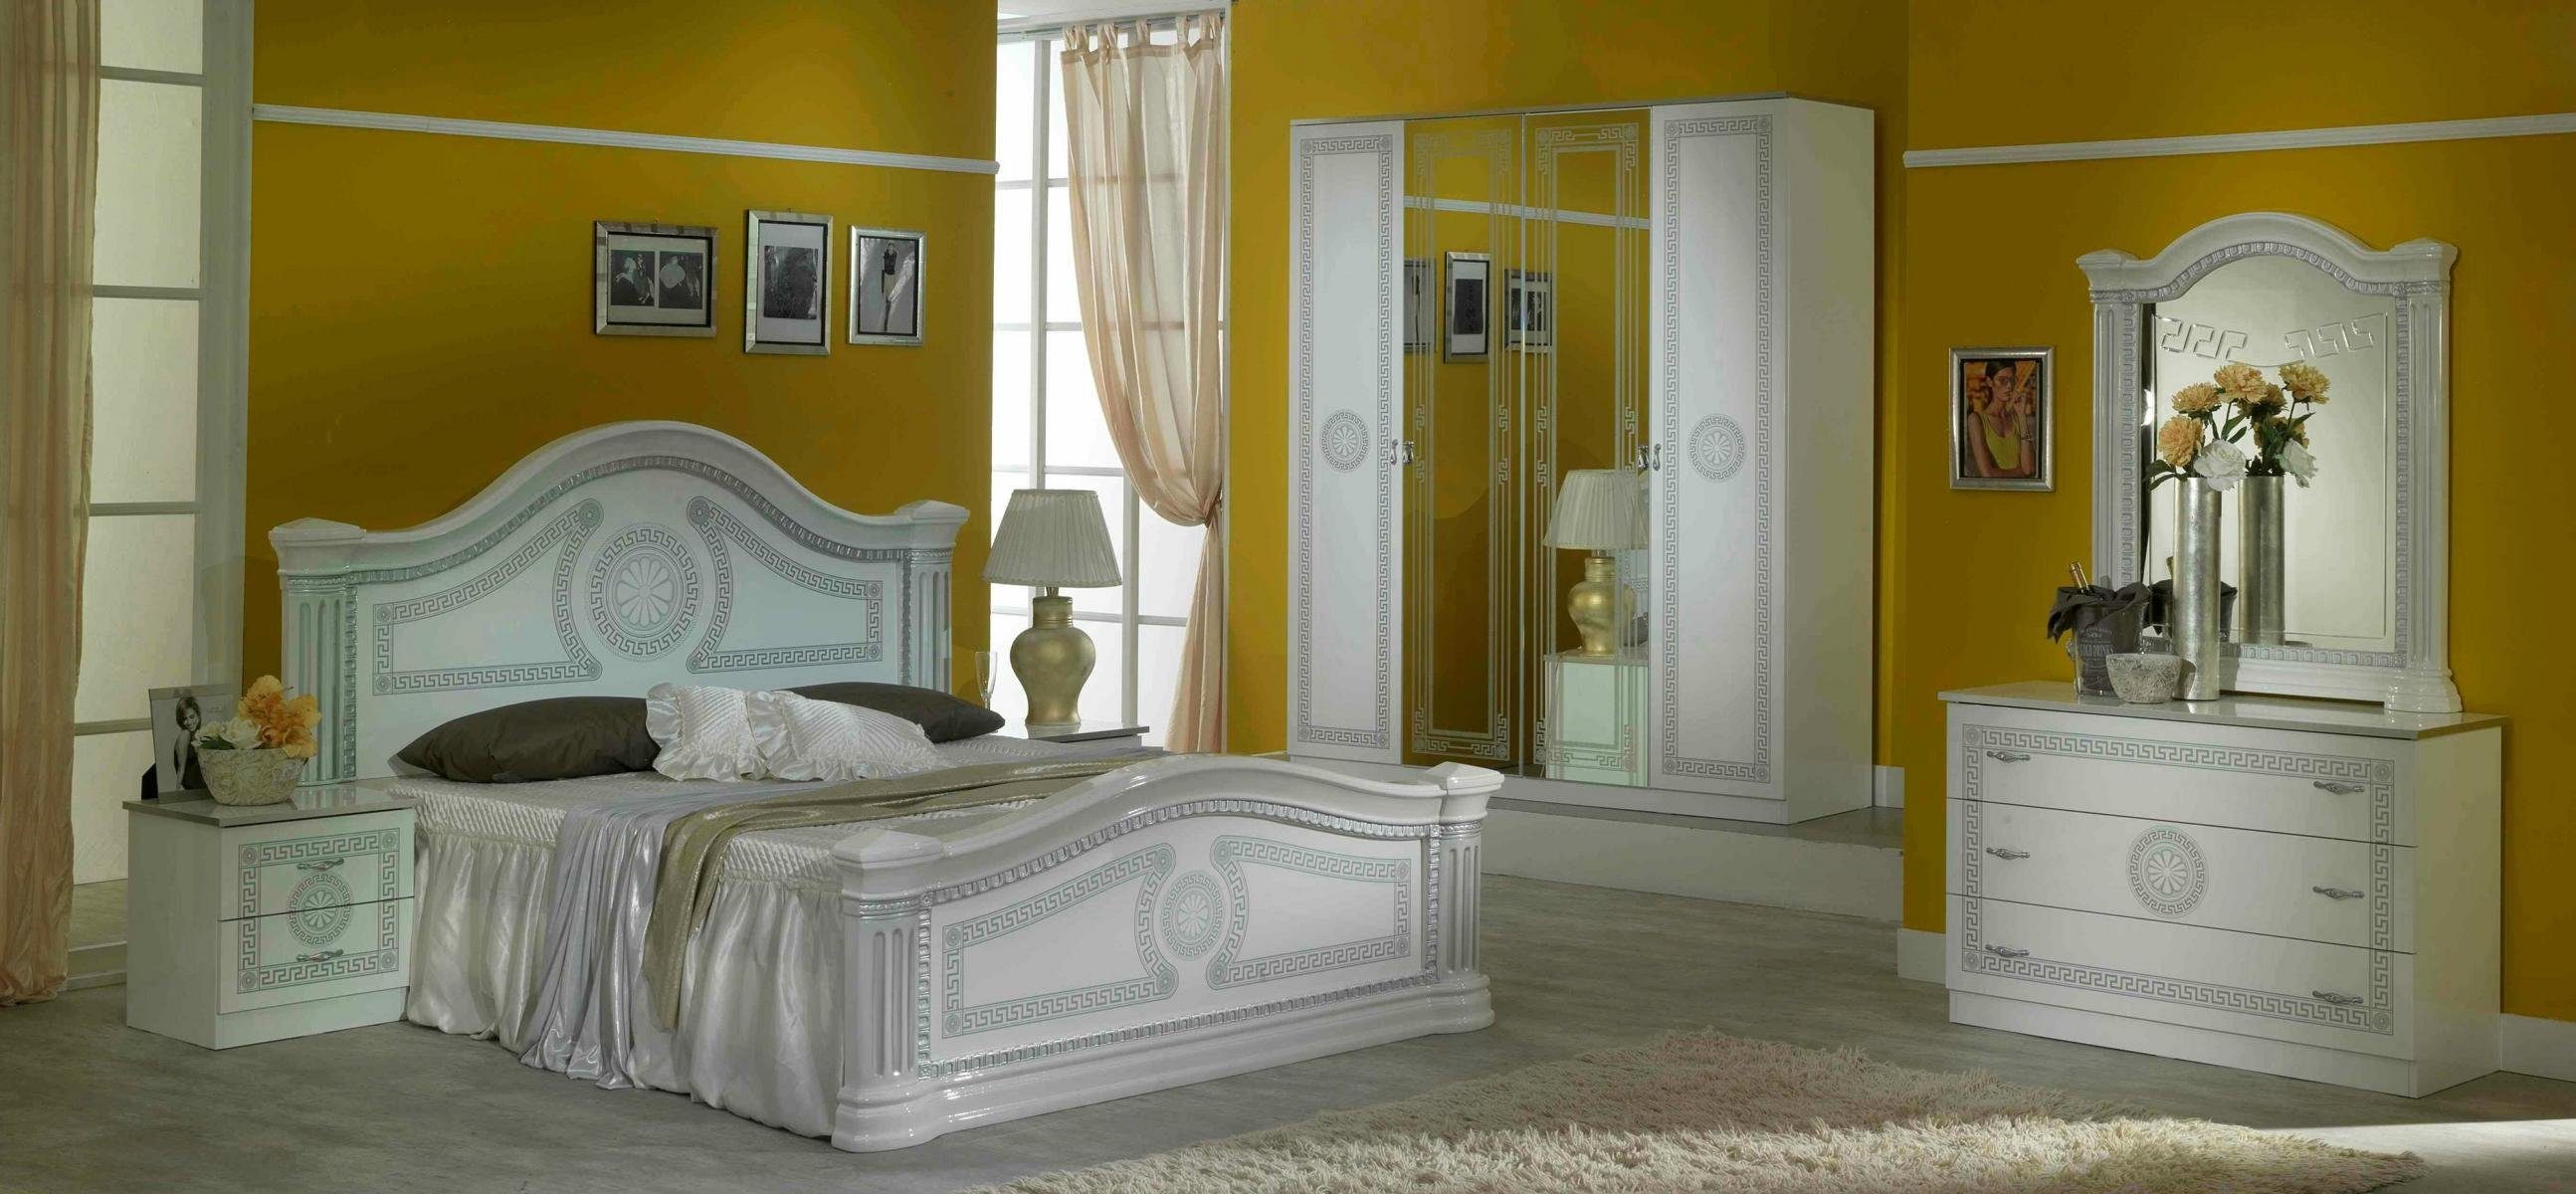 JVmoebel Schlafzimmer-Set Luxus Schlafzimmer 3tlg. Bett 2x Nachttisch Klassischer Design Betten